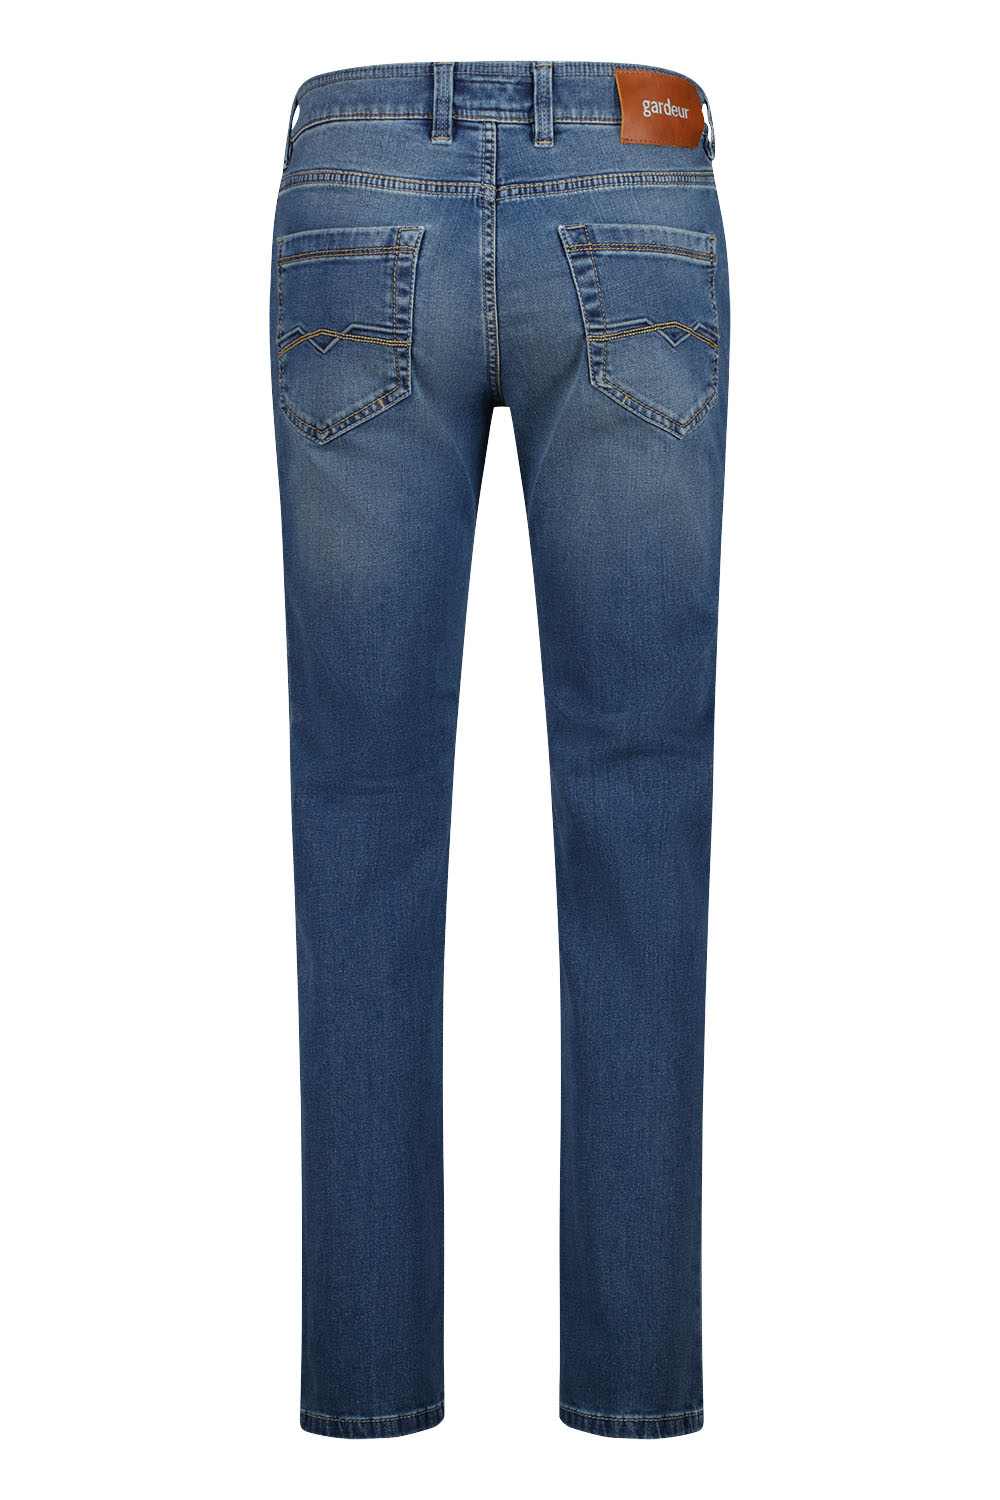 Gardeur - Batu Jeans Indigo Blauw - Heren - Maat W 32 - L 30 - Modern-fit